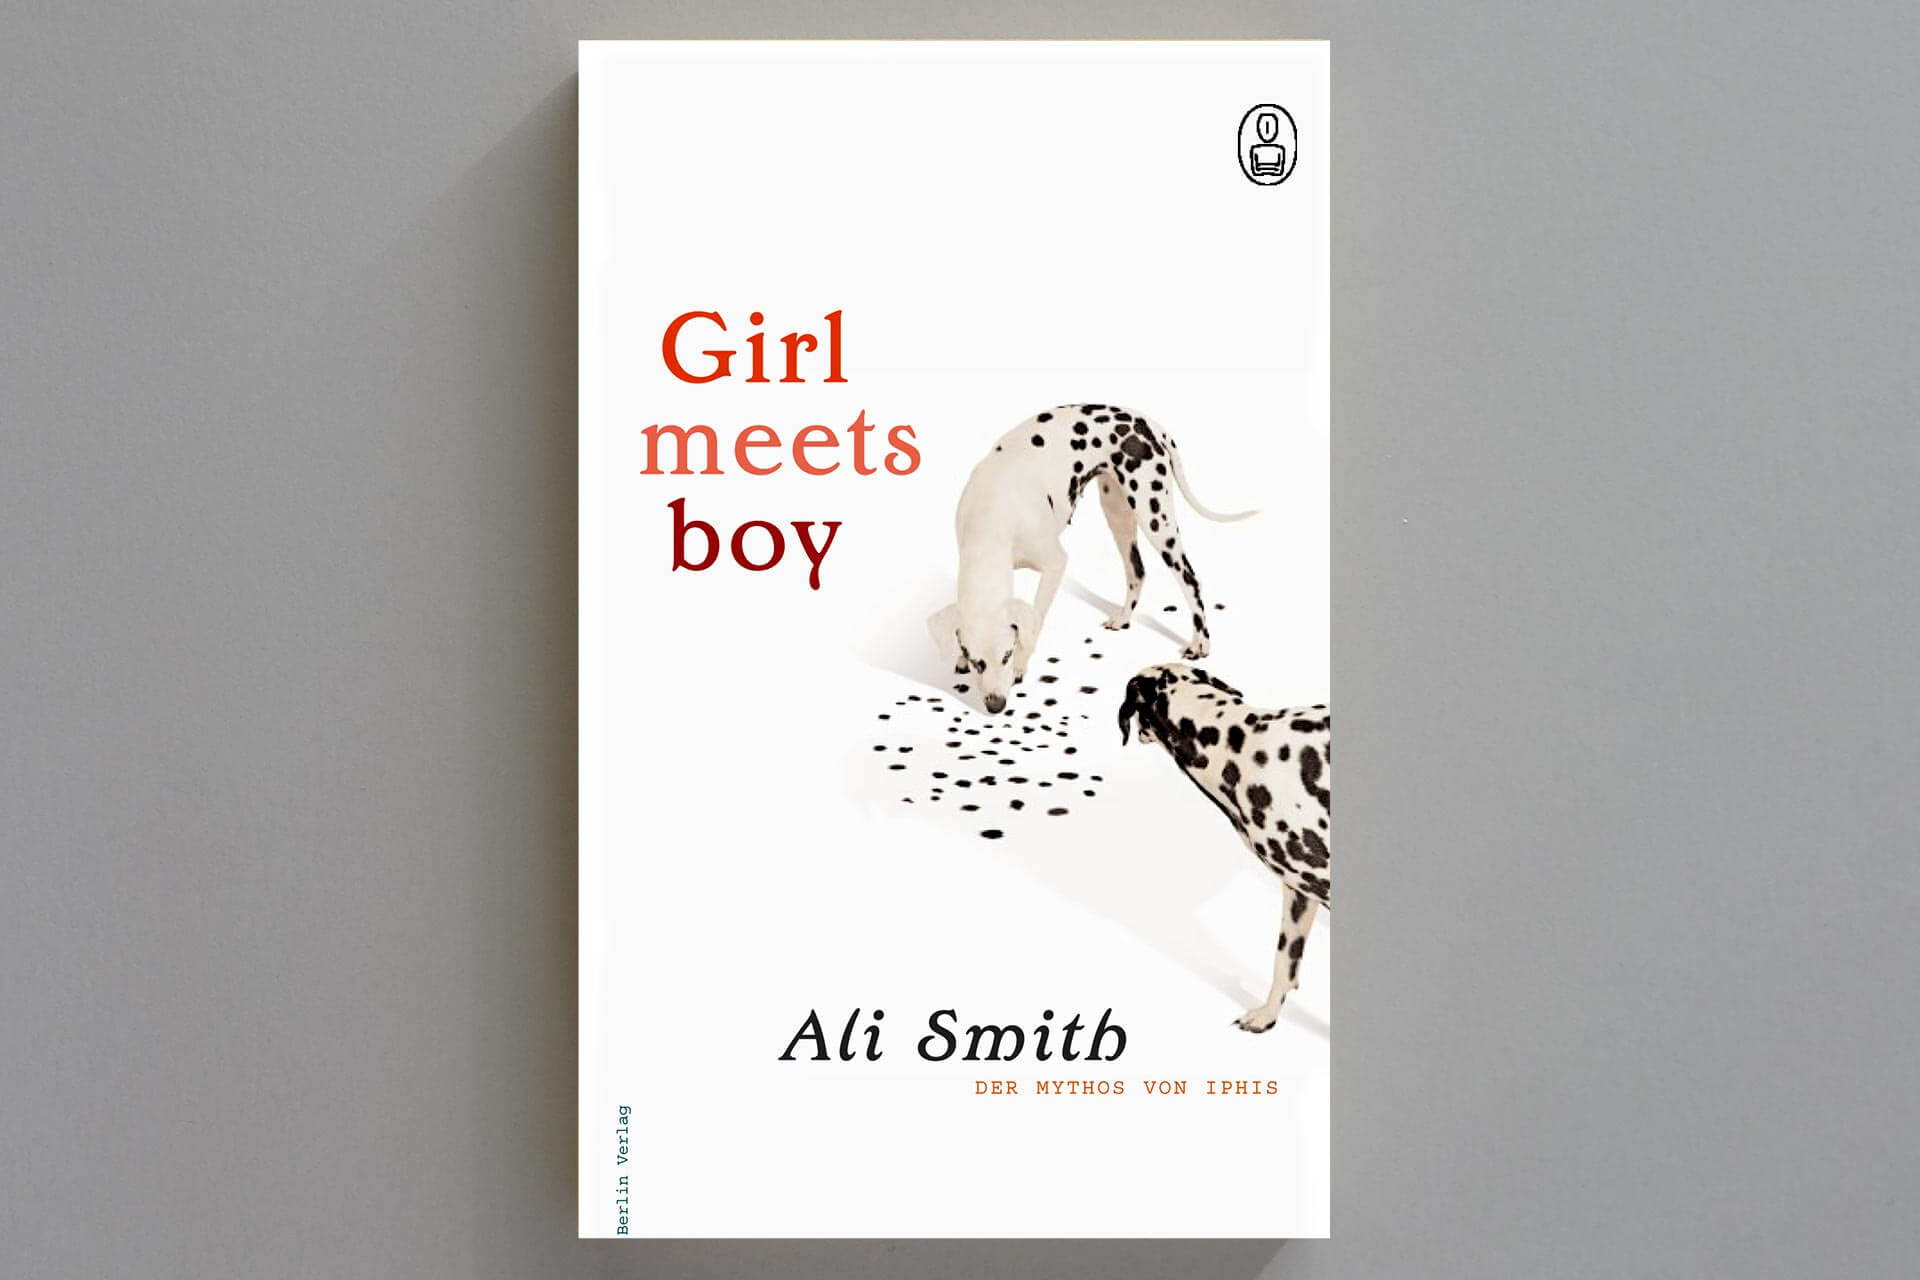 Abbildung einer Buchcover-Gestaltung für das Taschenbuch „Girl meets Boy“ von Ali Smith mit Dalmatinern